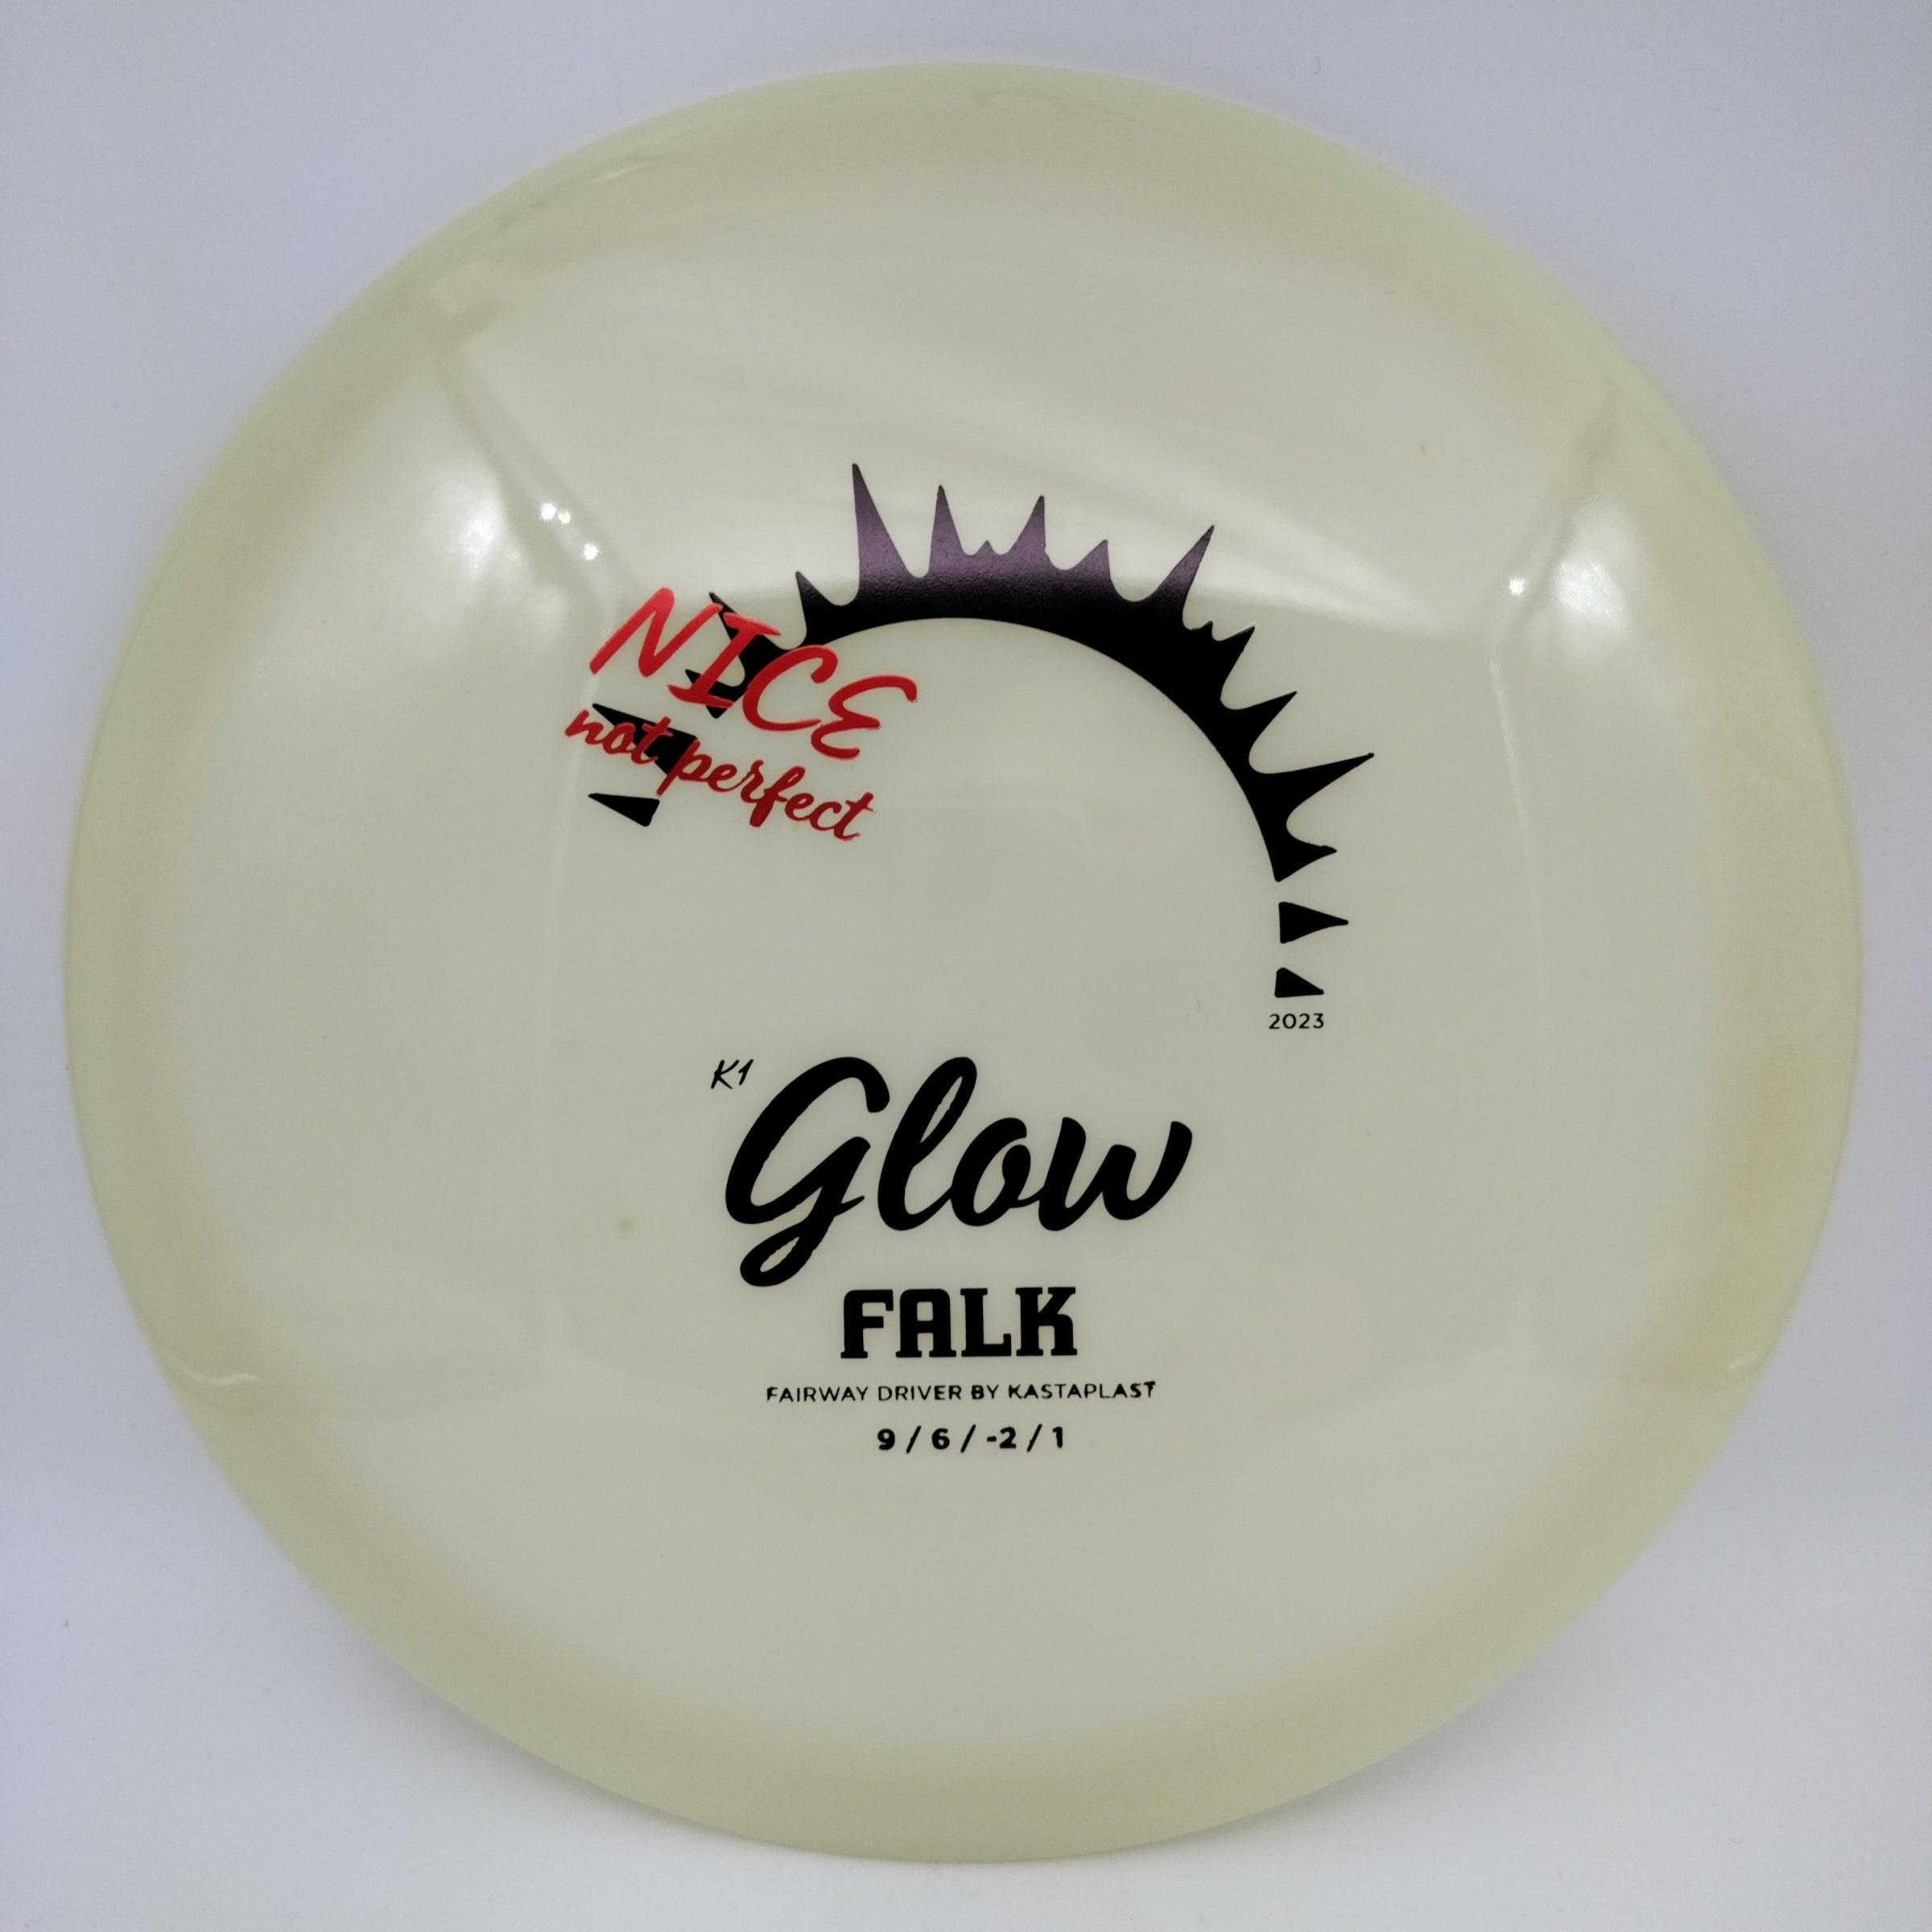 K1 Glow Falk 2023 X-OUT